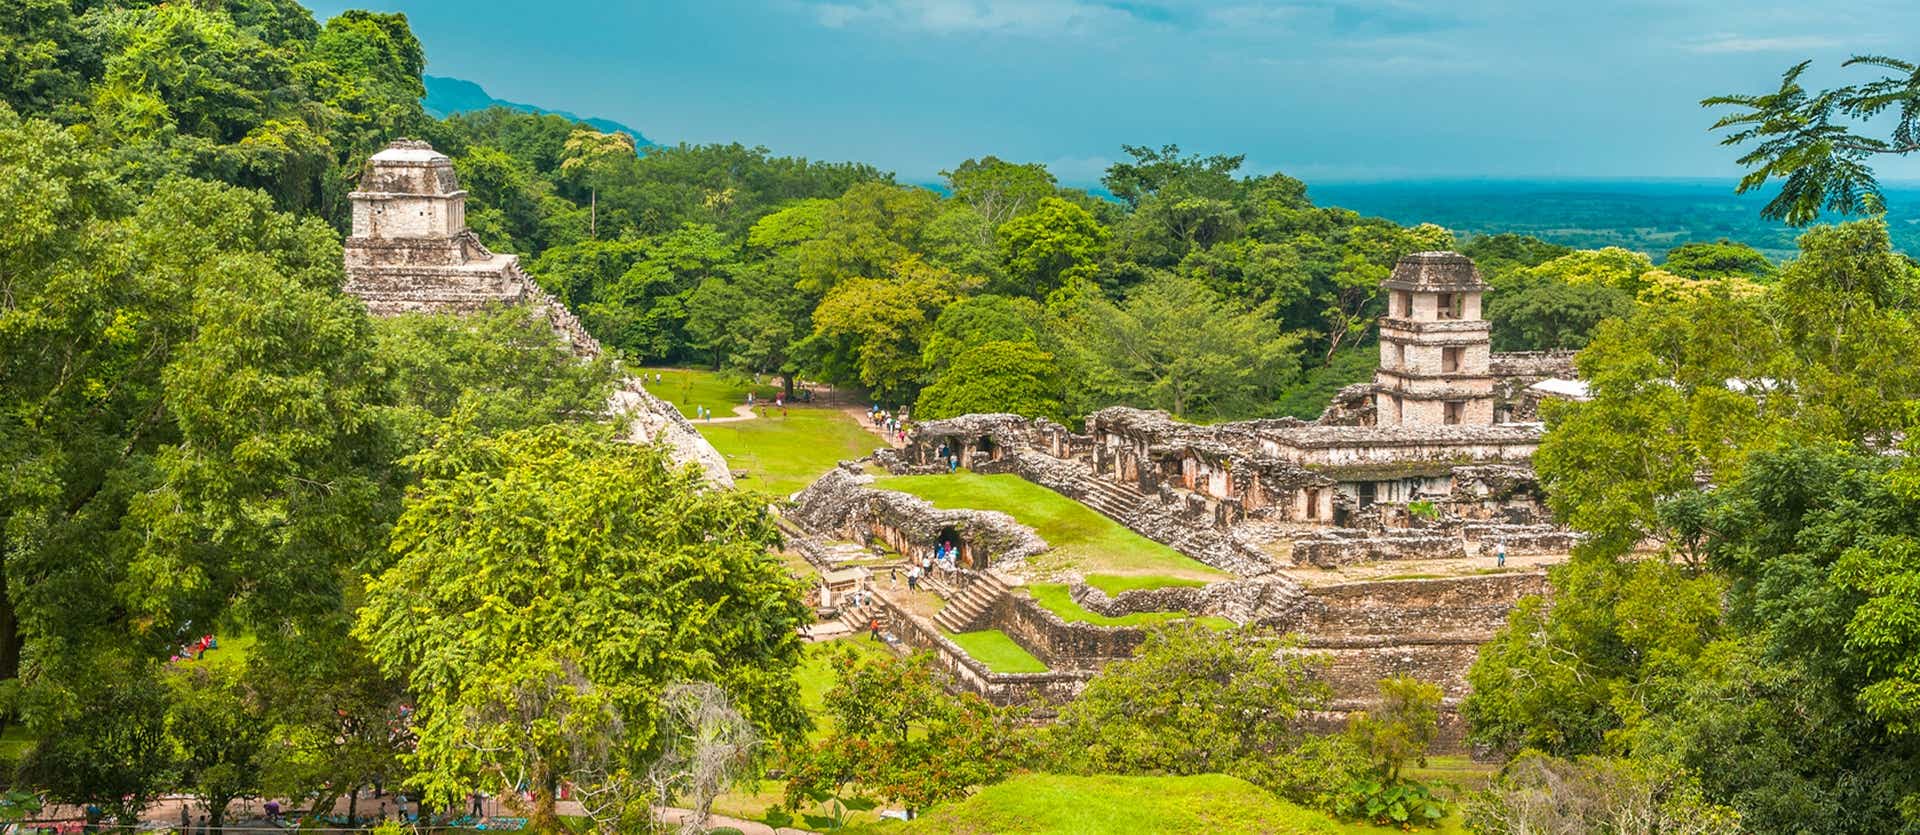 Mayan Ruins <span class="iconos separador"></span> Palenque